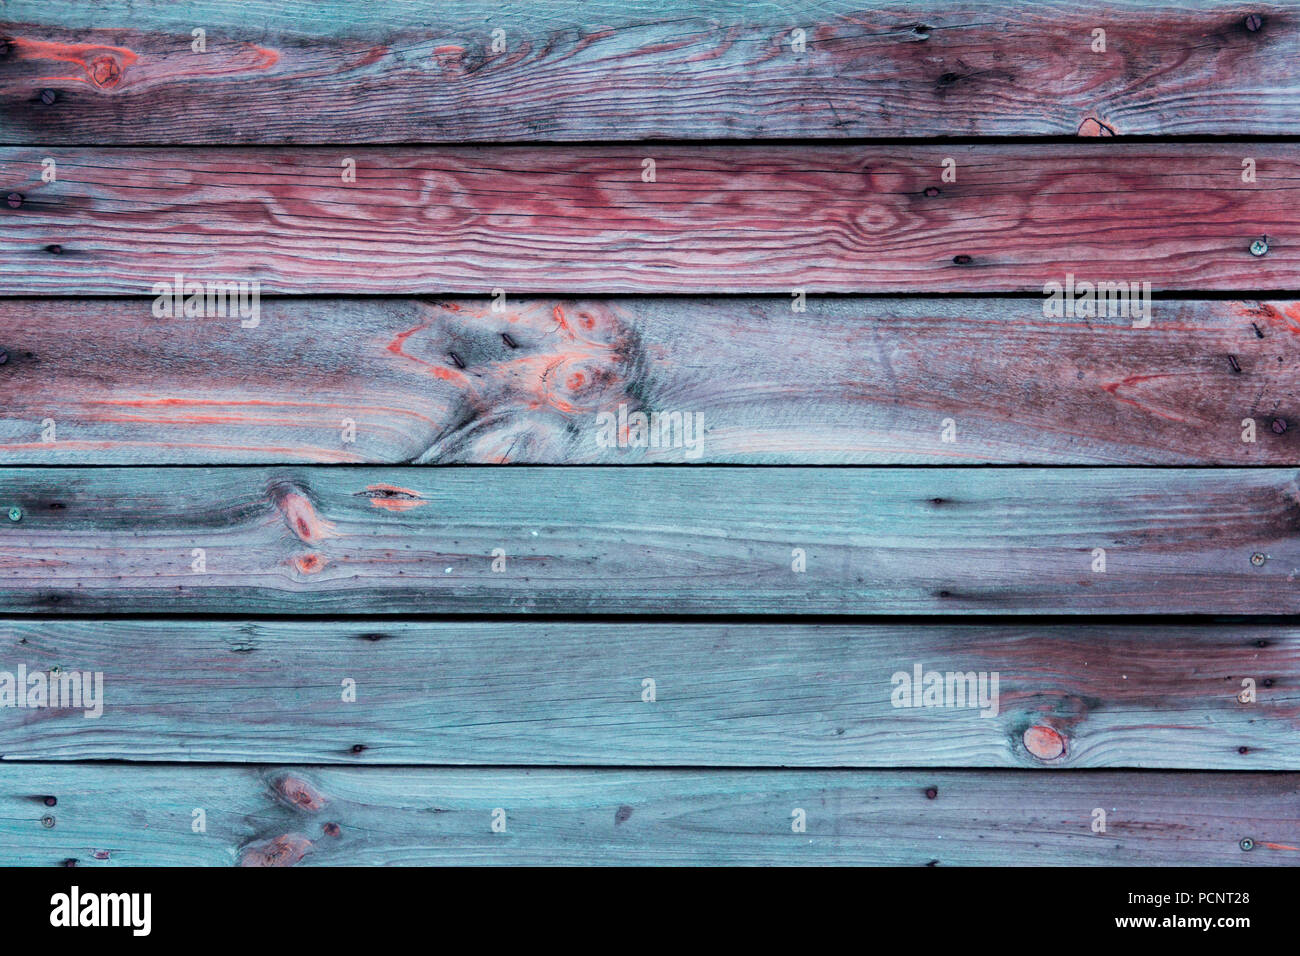 Close-up de la surface multicolore (mur, plancher ou les frais généraux) faite de planche en bois, le tribunal ou l'administration dans le turquoise, bleu, rouge, bordeaux, tons corail Banque D'Images